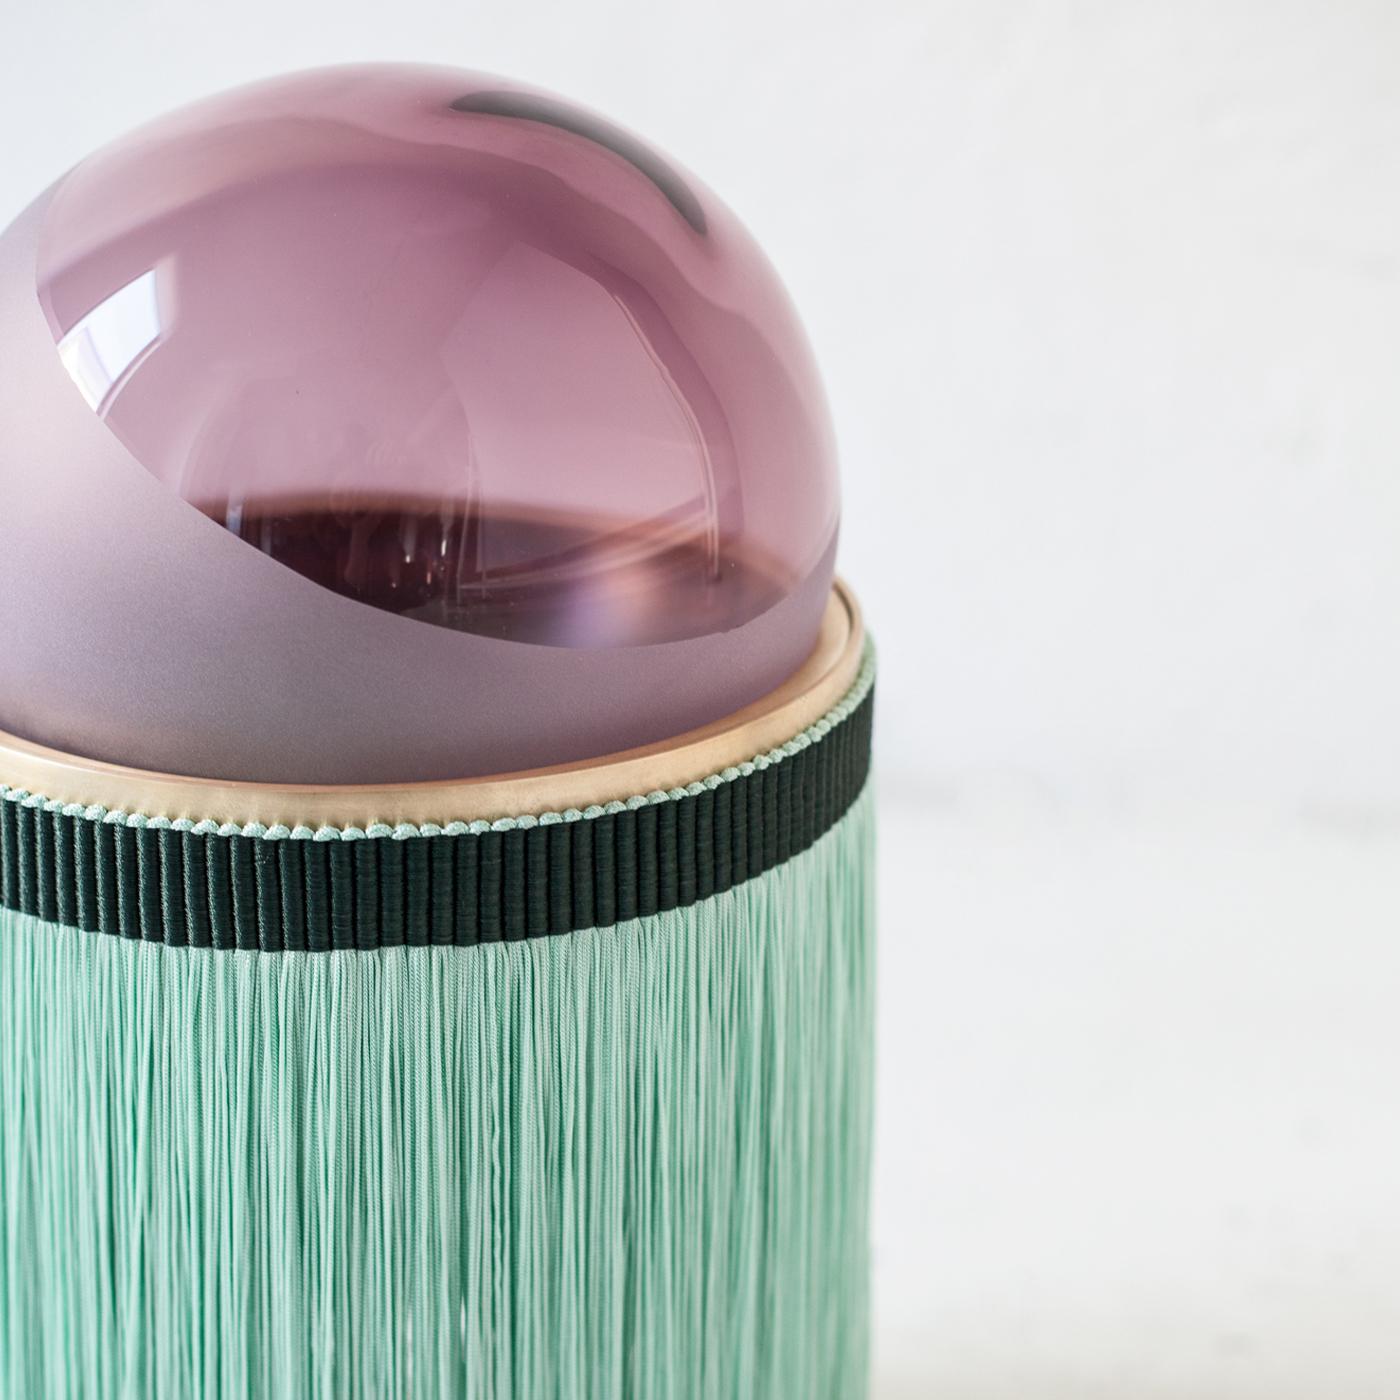 Inspiré par la Sicile, la patrie du duo de designers Vi et M, cet élégant lampadaire est une célébration des couleurs, des textures et de l'esthétique moderne. L'élégant abat-jour rose rubis, une sphère réalisée en verre de Murano soufflé à la